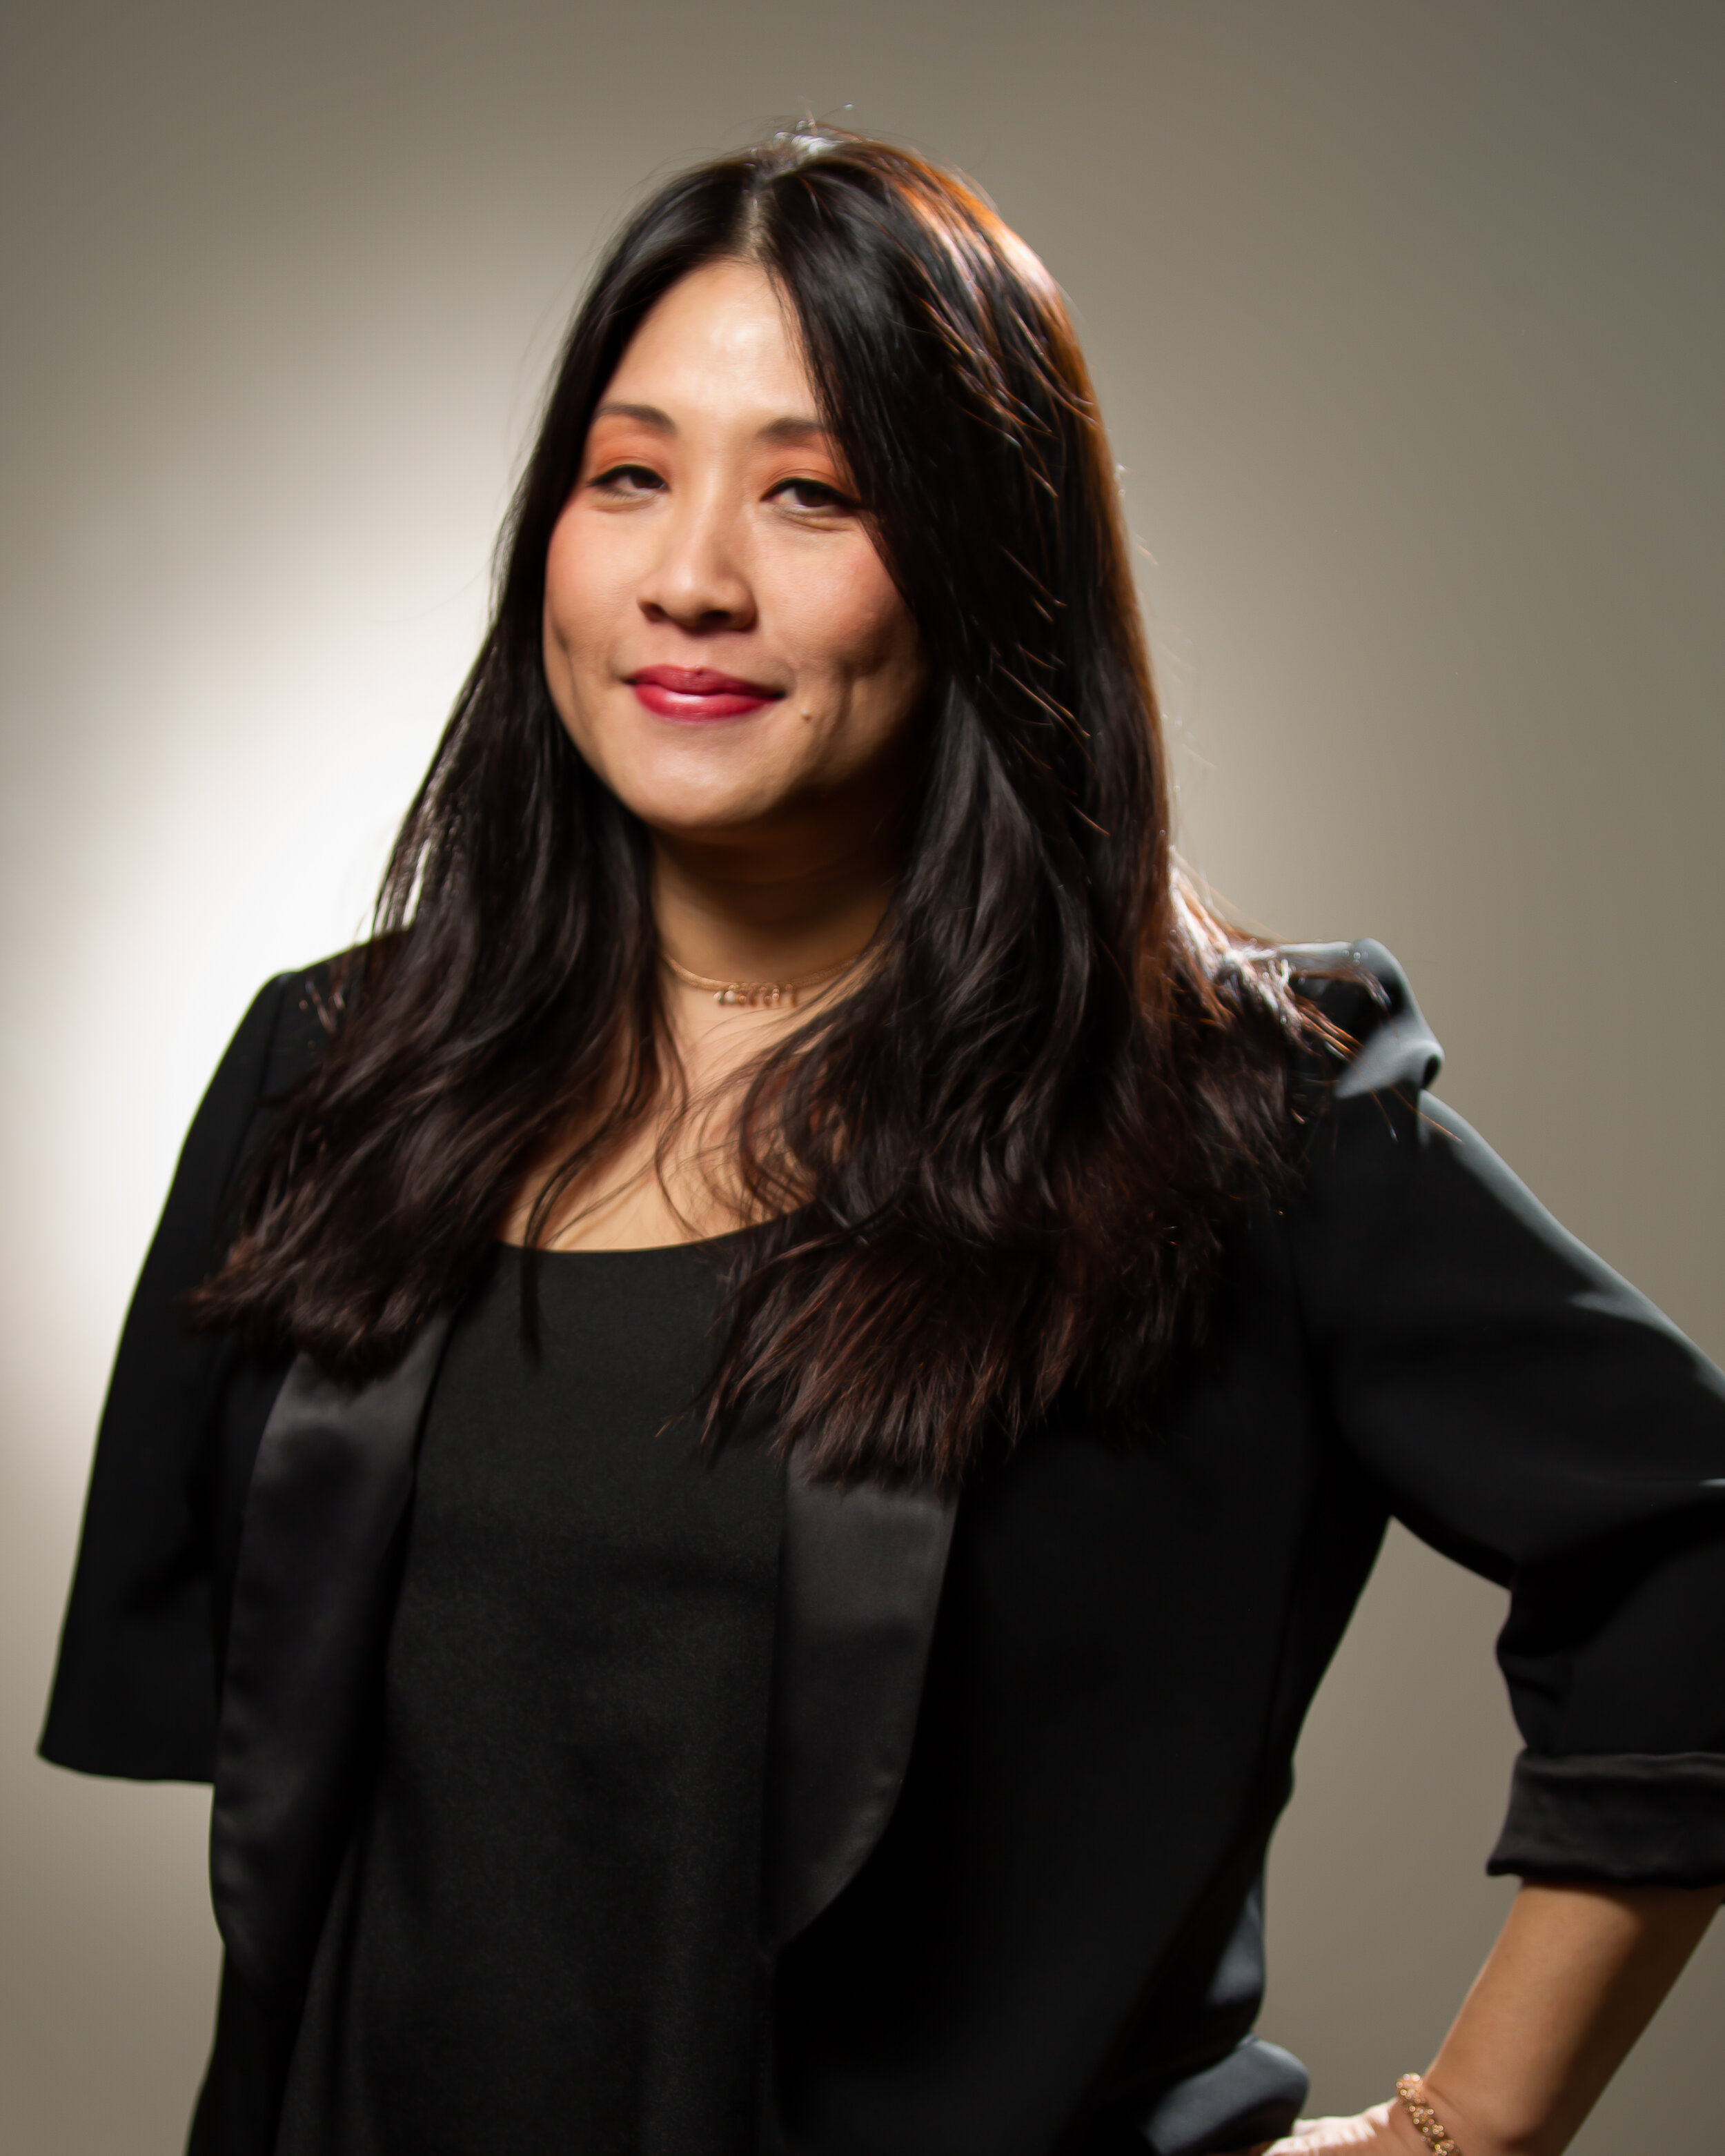 Suzan Nguyening